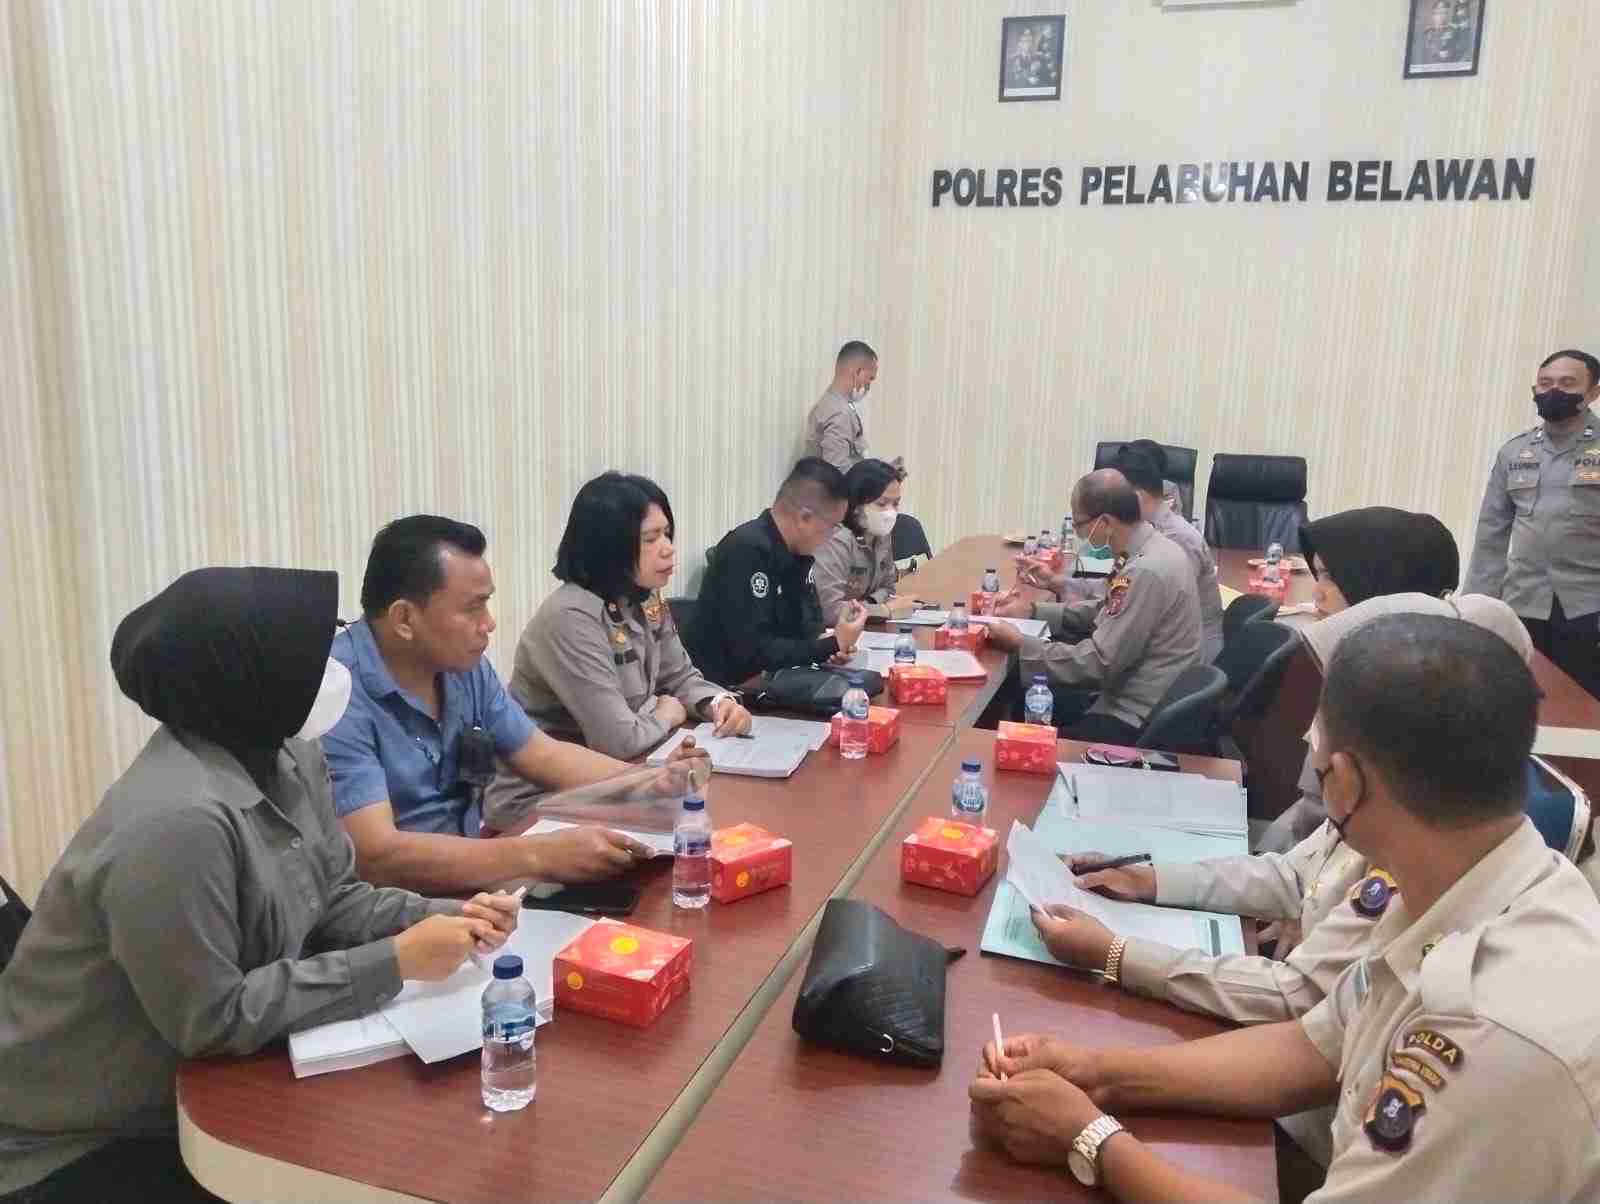 Kasi Humas Polrestabes Medan Hadiri Pelaksanaan Supervisi Kehumasan di Polres Pelabuhan Belawan